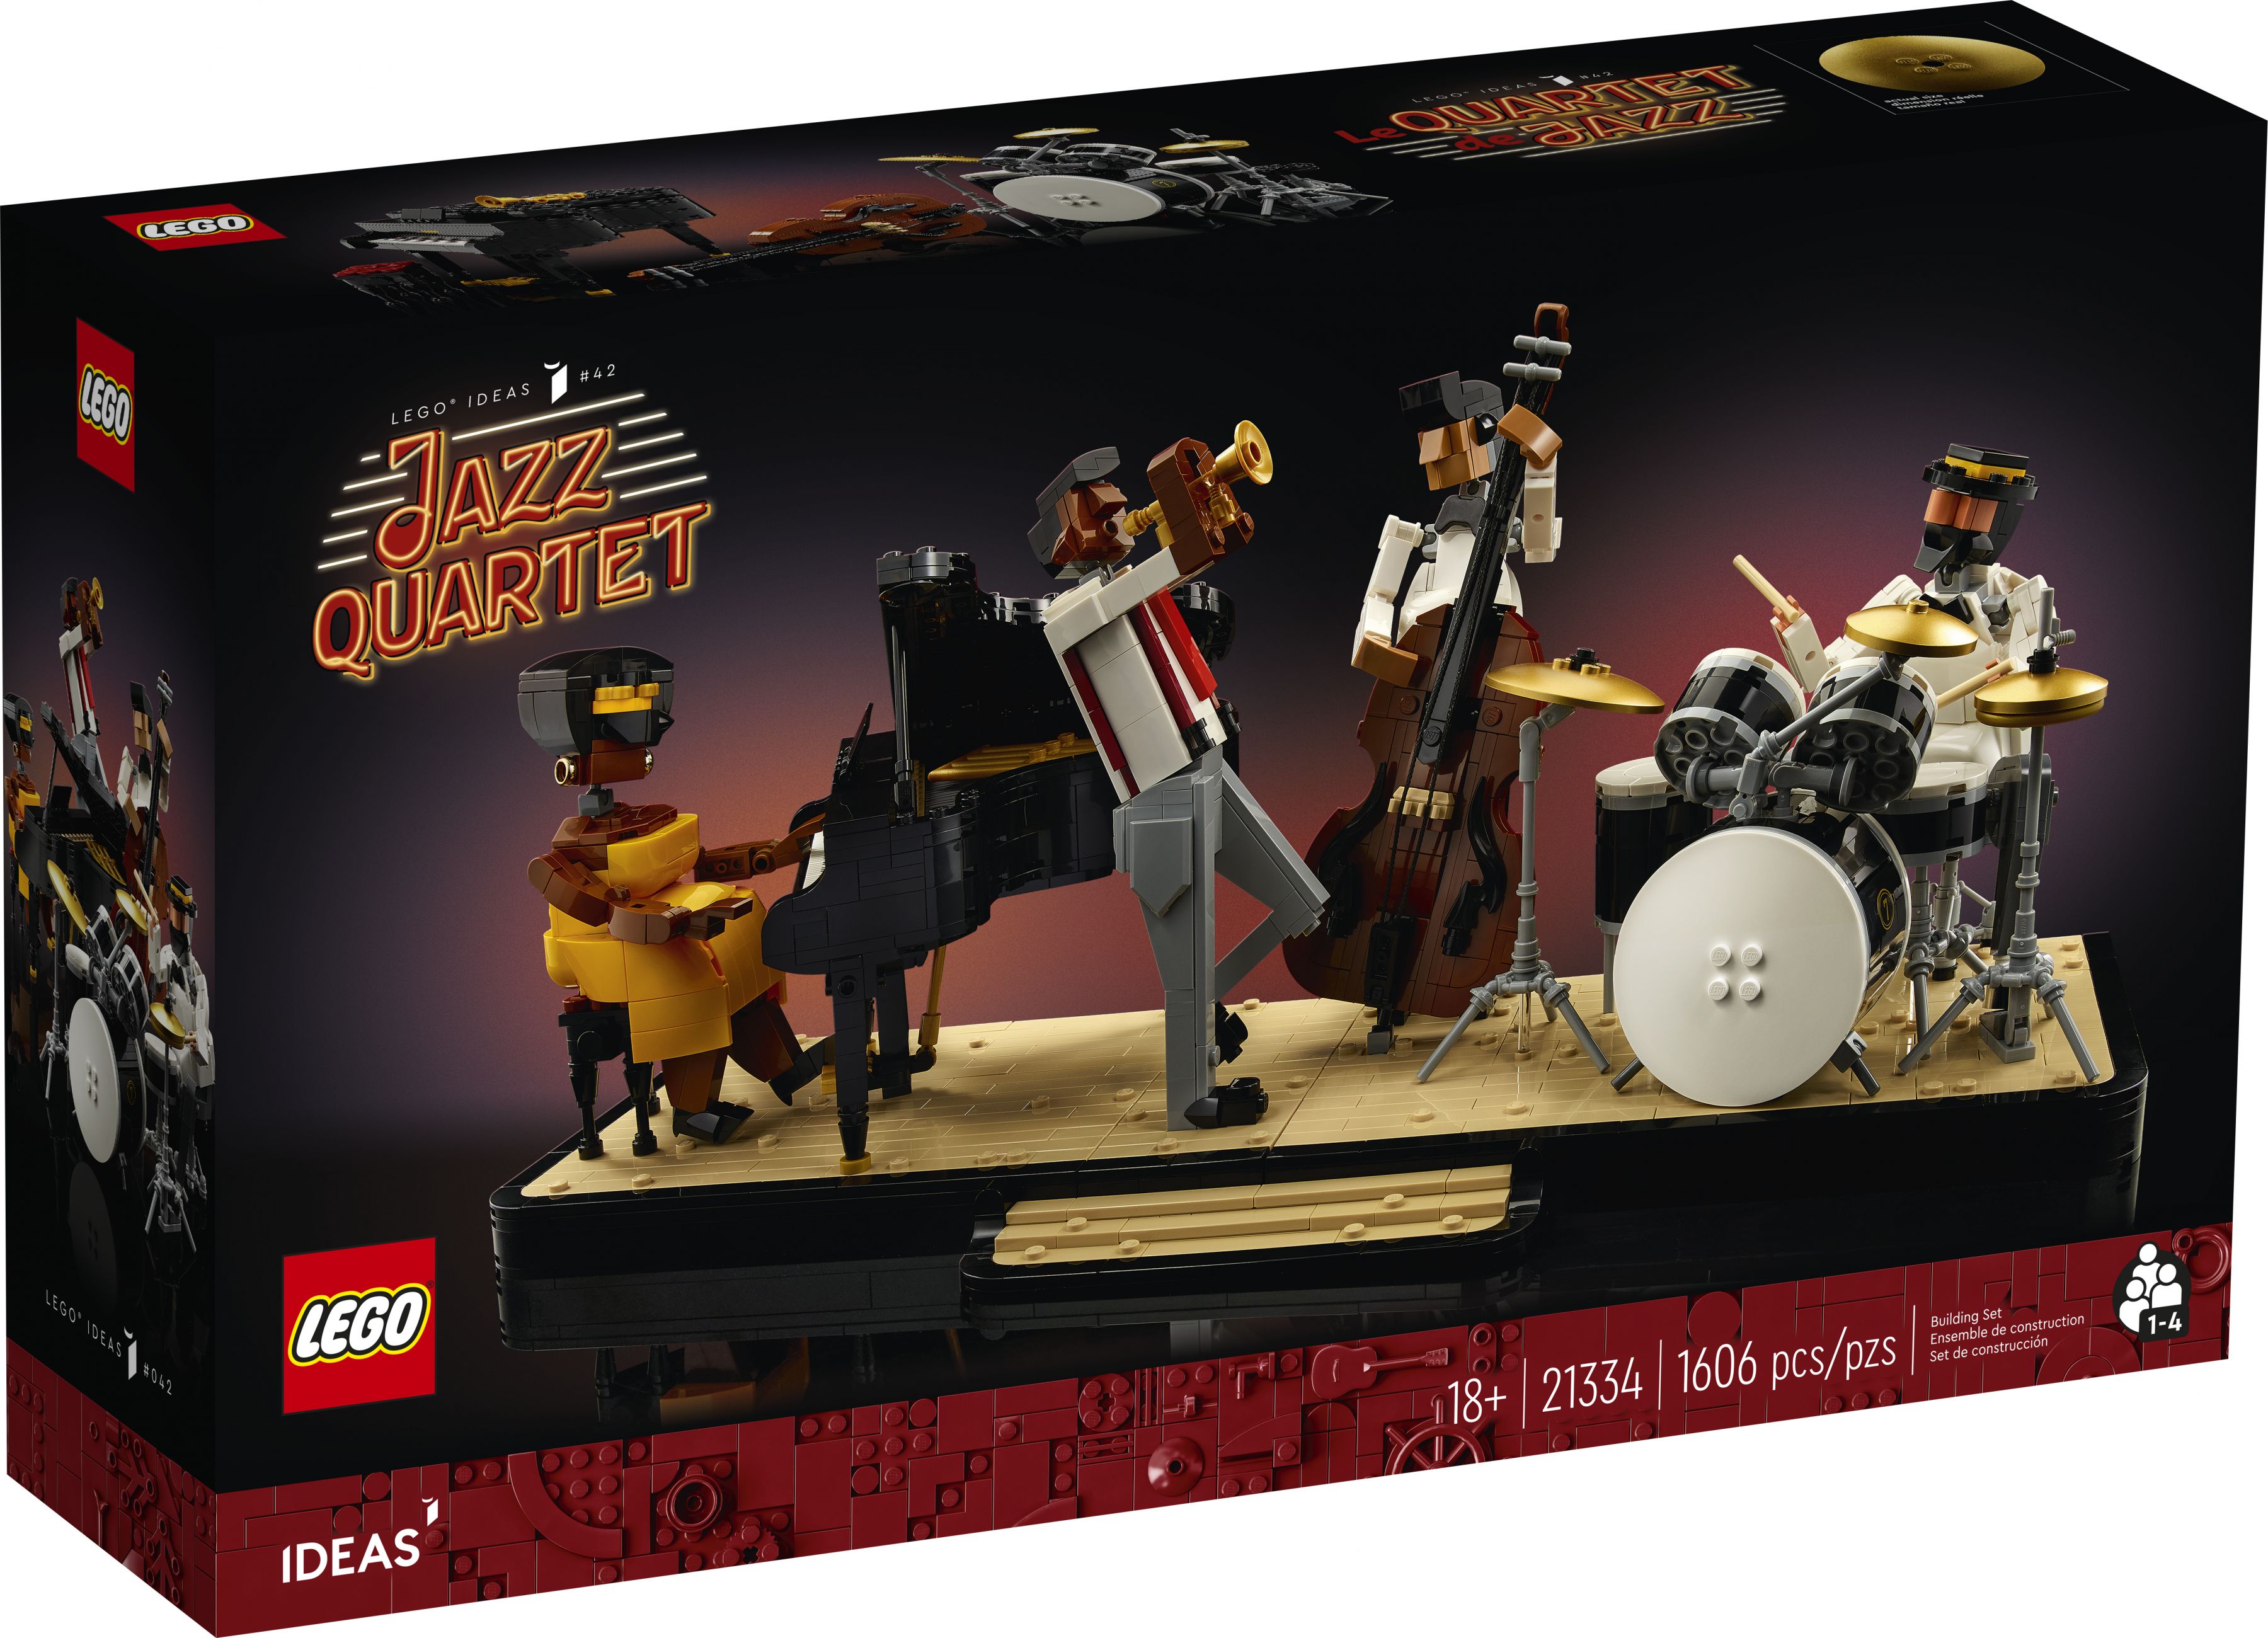 LEGO Ideas 21334 Jazz-Quartett LEGO_21334_Box1_v39.jpg